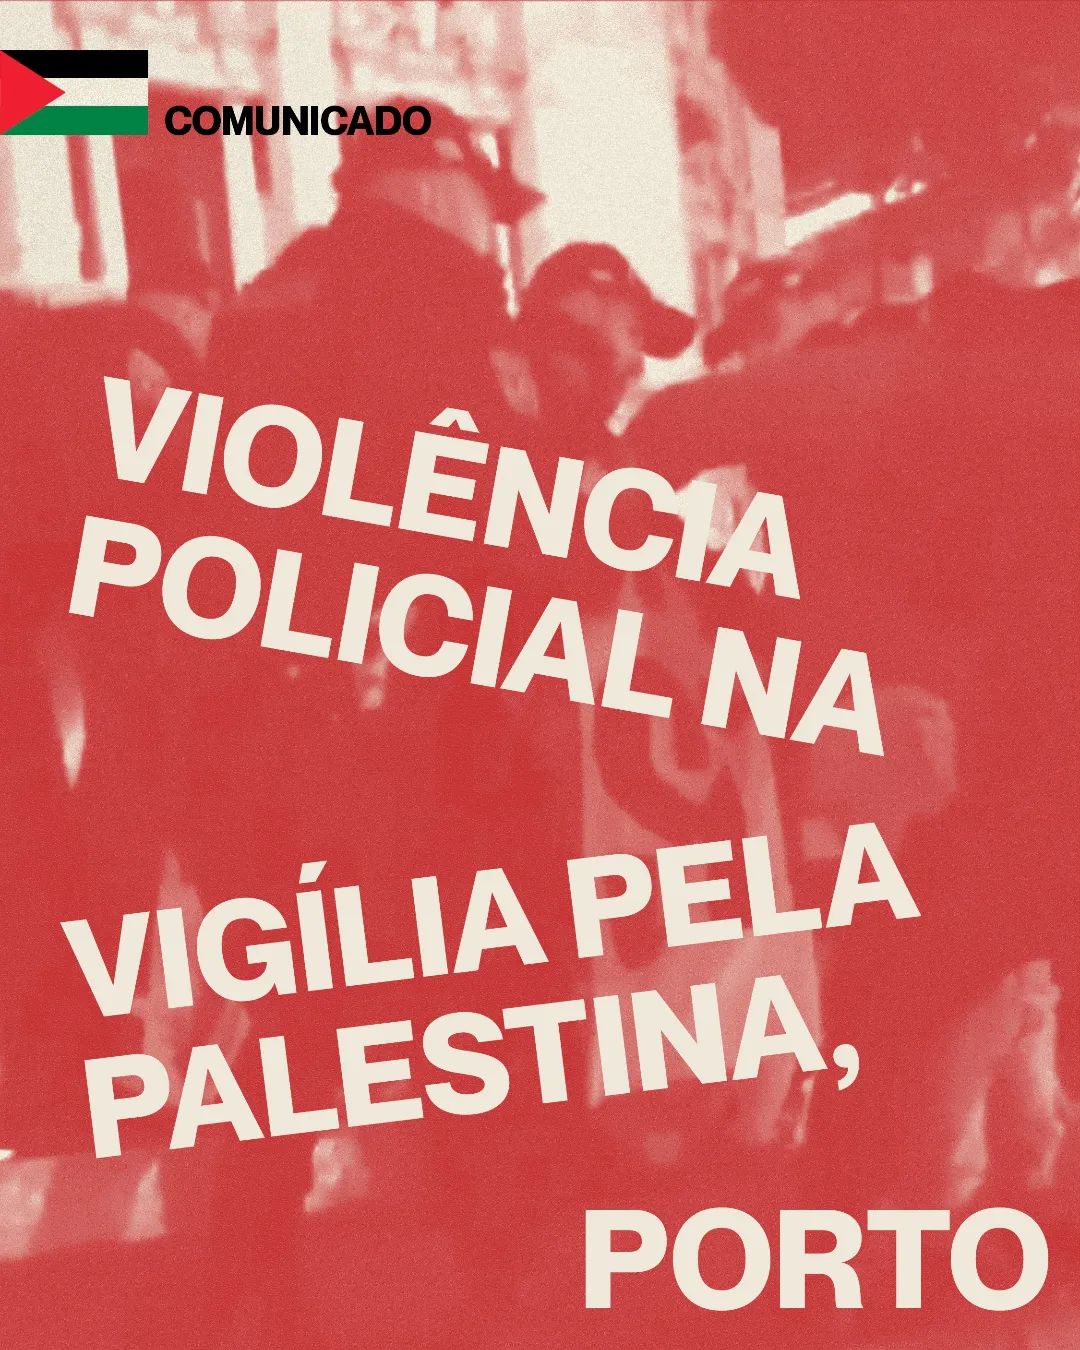 Agressão policial no passado dia 25 de março na vigília diária pela Palestina no Porto